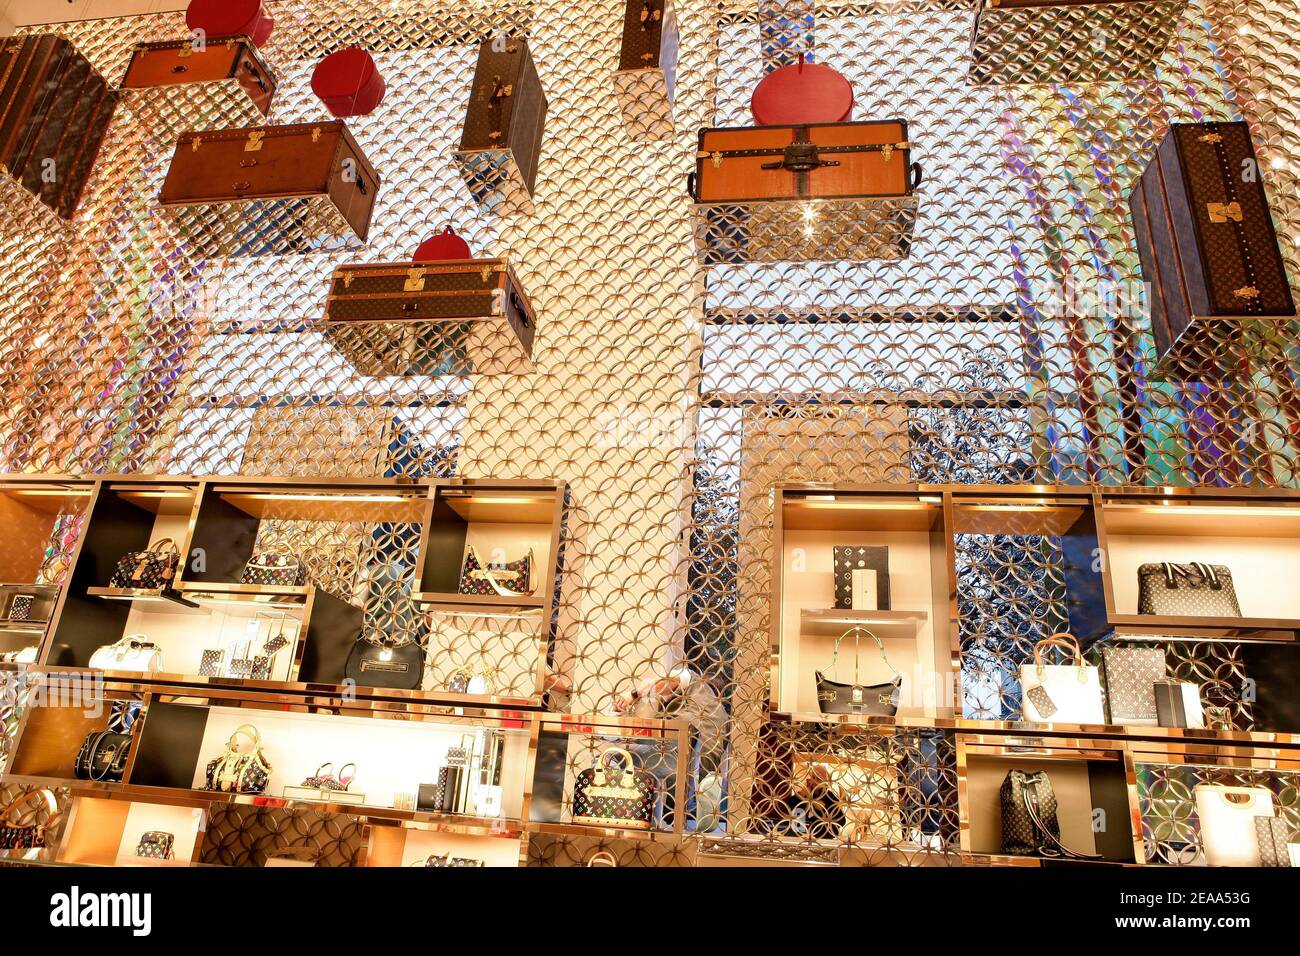 Paris, France - Champs Elysées Paris, Always Amazing Boutique Louis Vuitton  Champs-Elysées Crédit Photo: @sophiesvene Follow us on IG:  @champselysees_paris www.champselysees-paris.com © Paris, Always an Amazing  idea! #paris #parisal